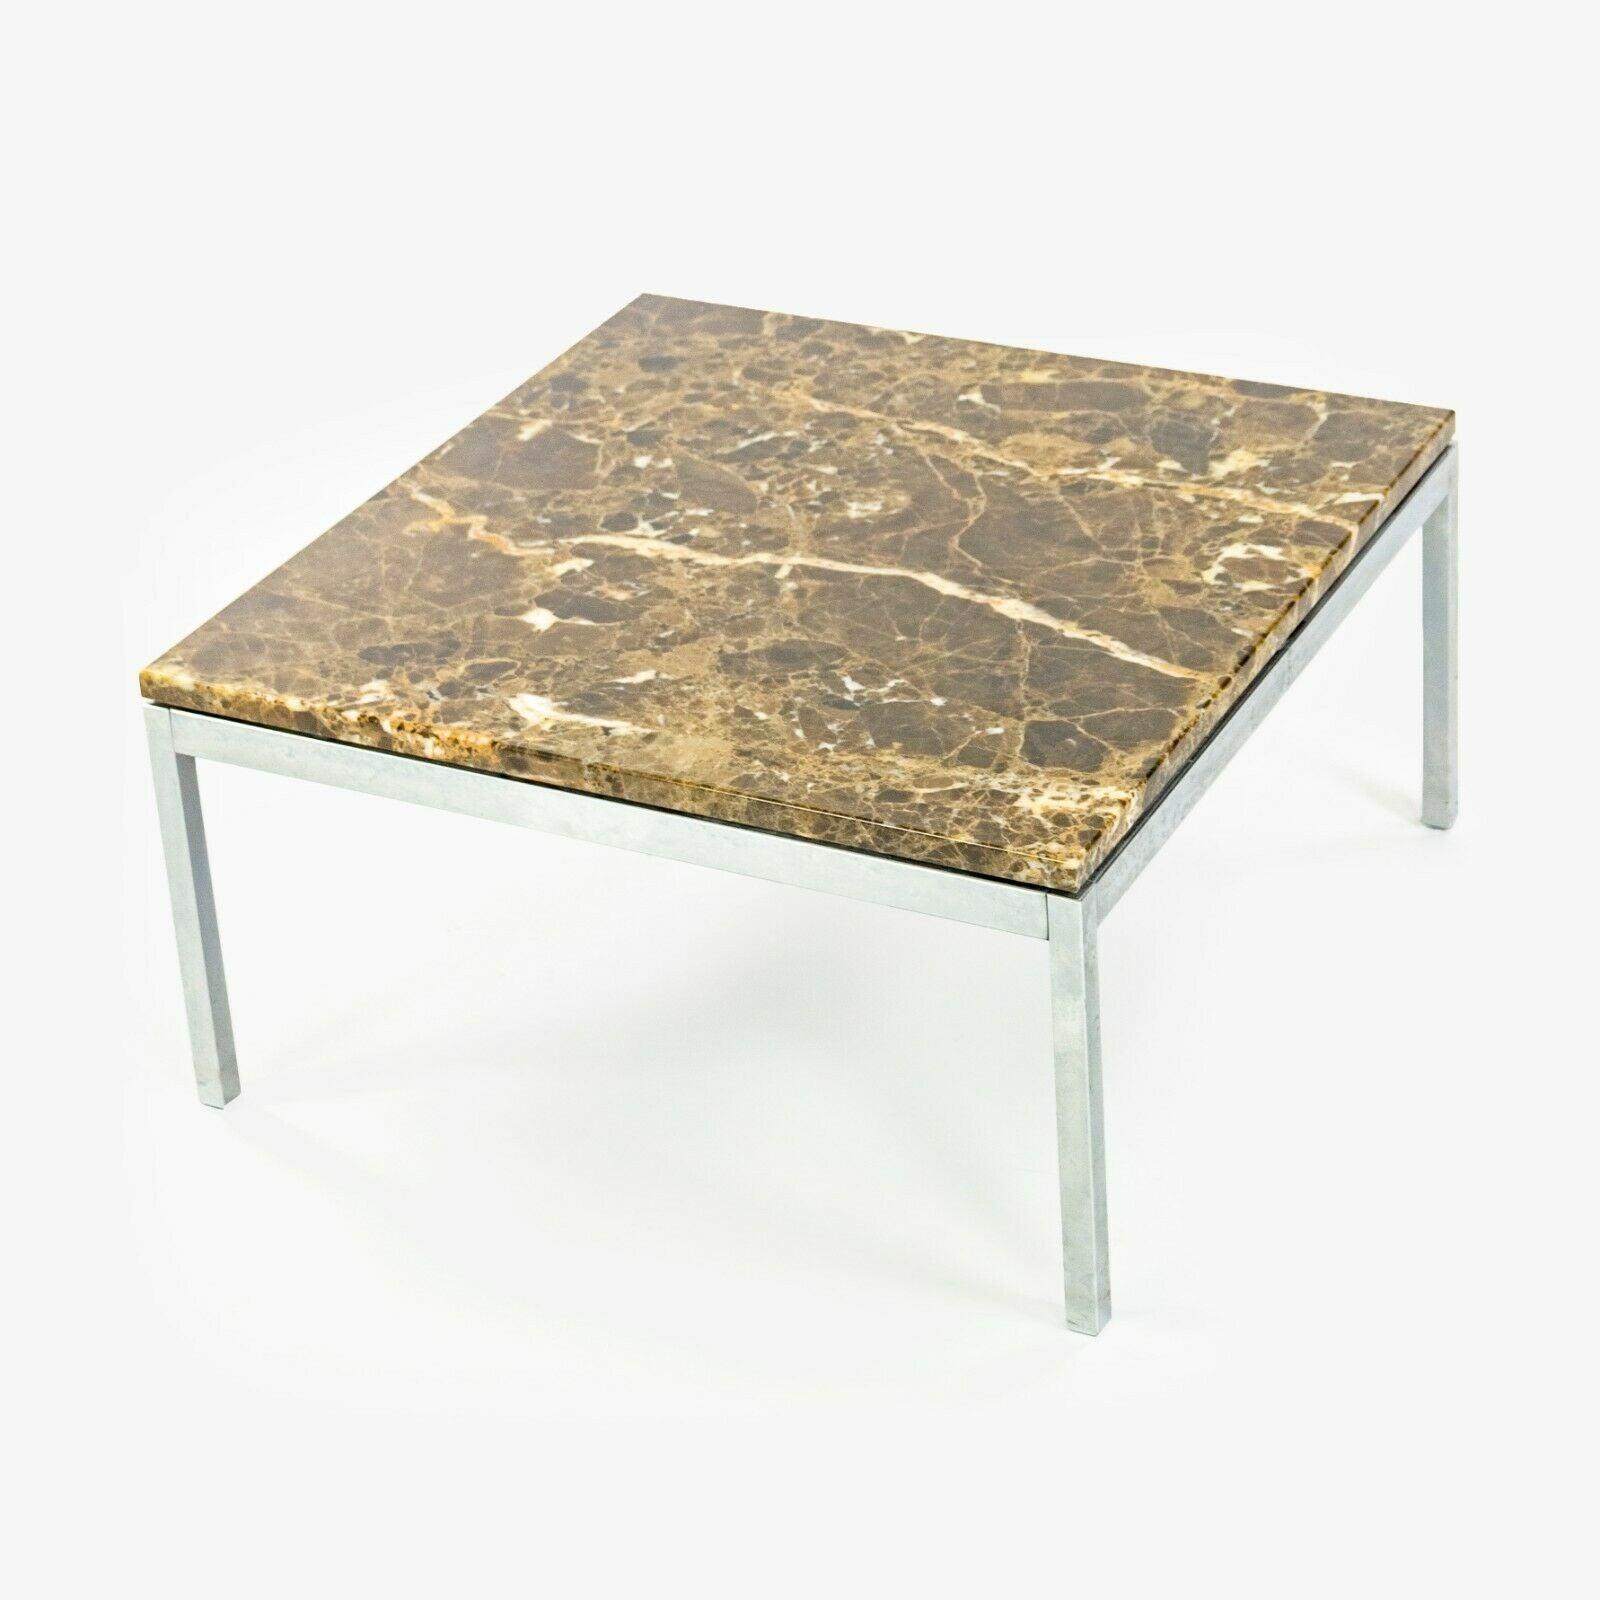 Listed for sale is a Florence Knoll for Knoll Studio 23.5 x 23.5 x 12 inch low coffee table / end table. Ce modèle possède un magnifique plateau en marbre espresso et une base en très bon état. La pièce présente très peu d'usure et le dessus est